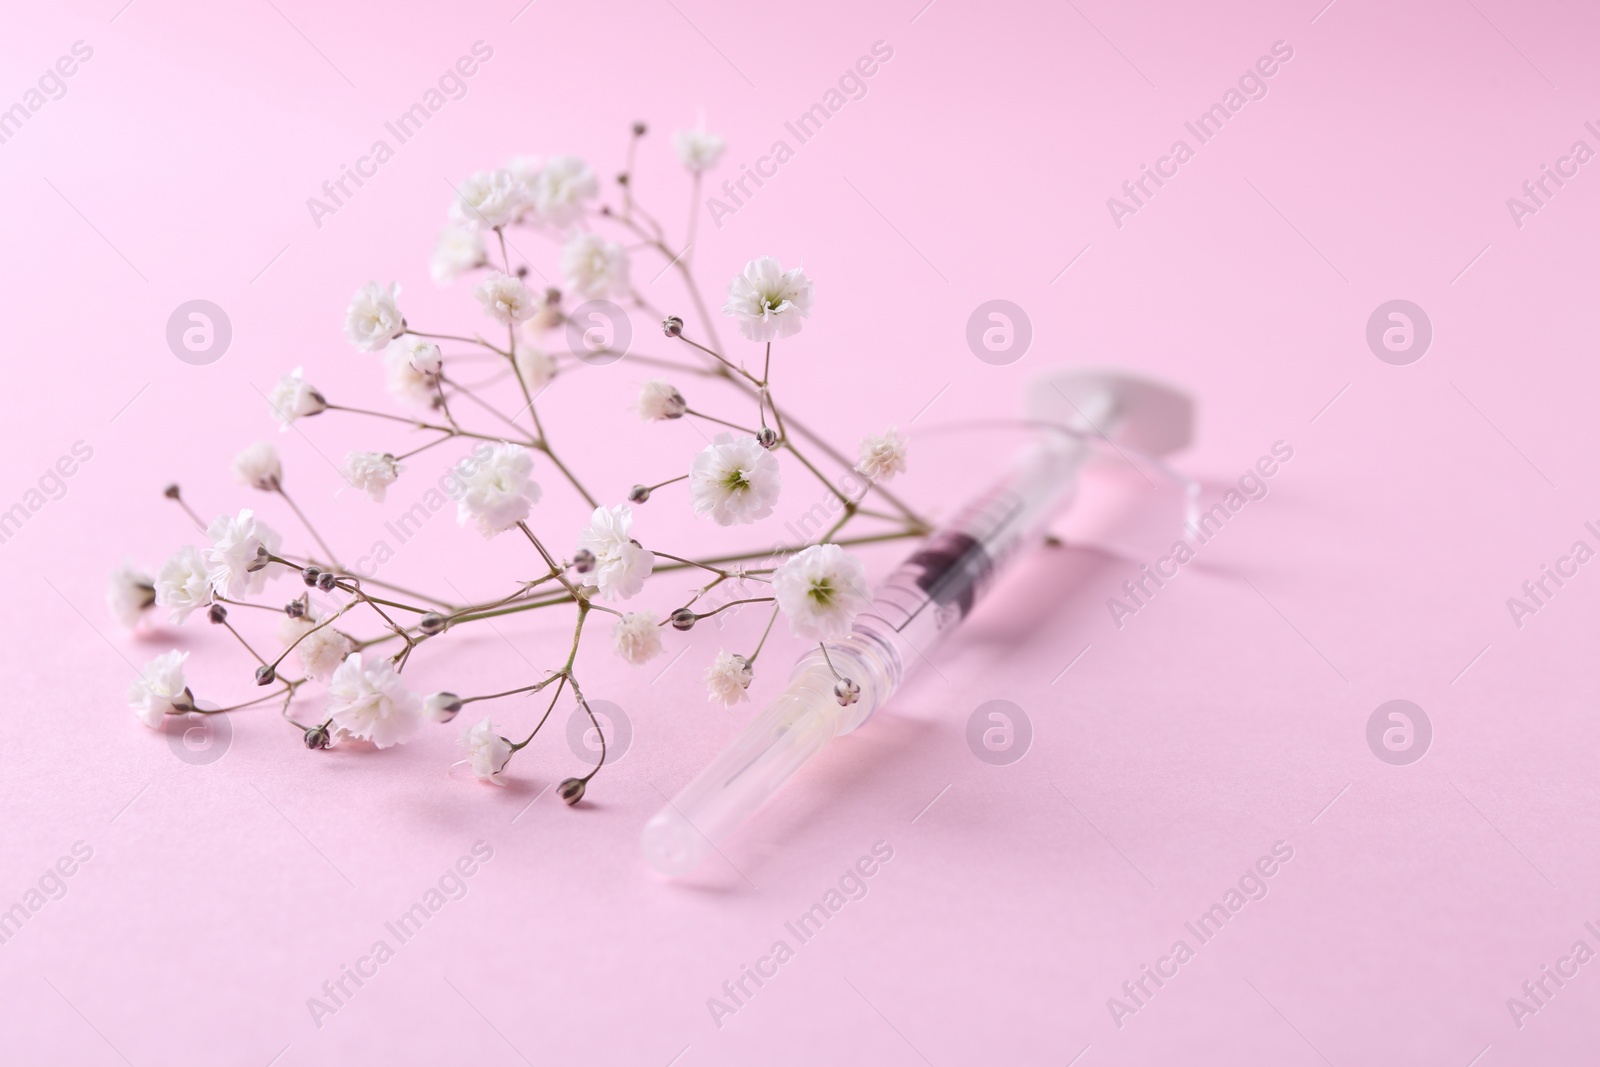 Photo of Cosmetology. Medical syringe and gypsophila on pink background, closeup